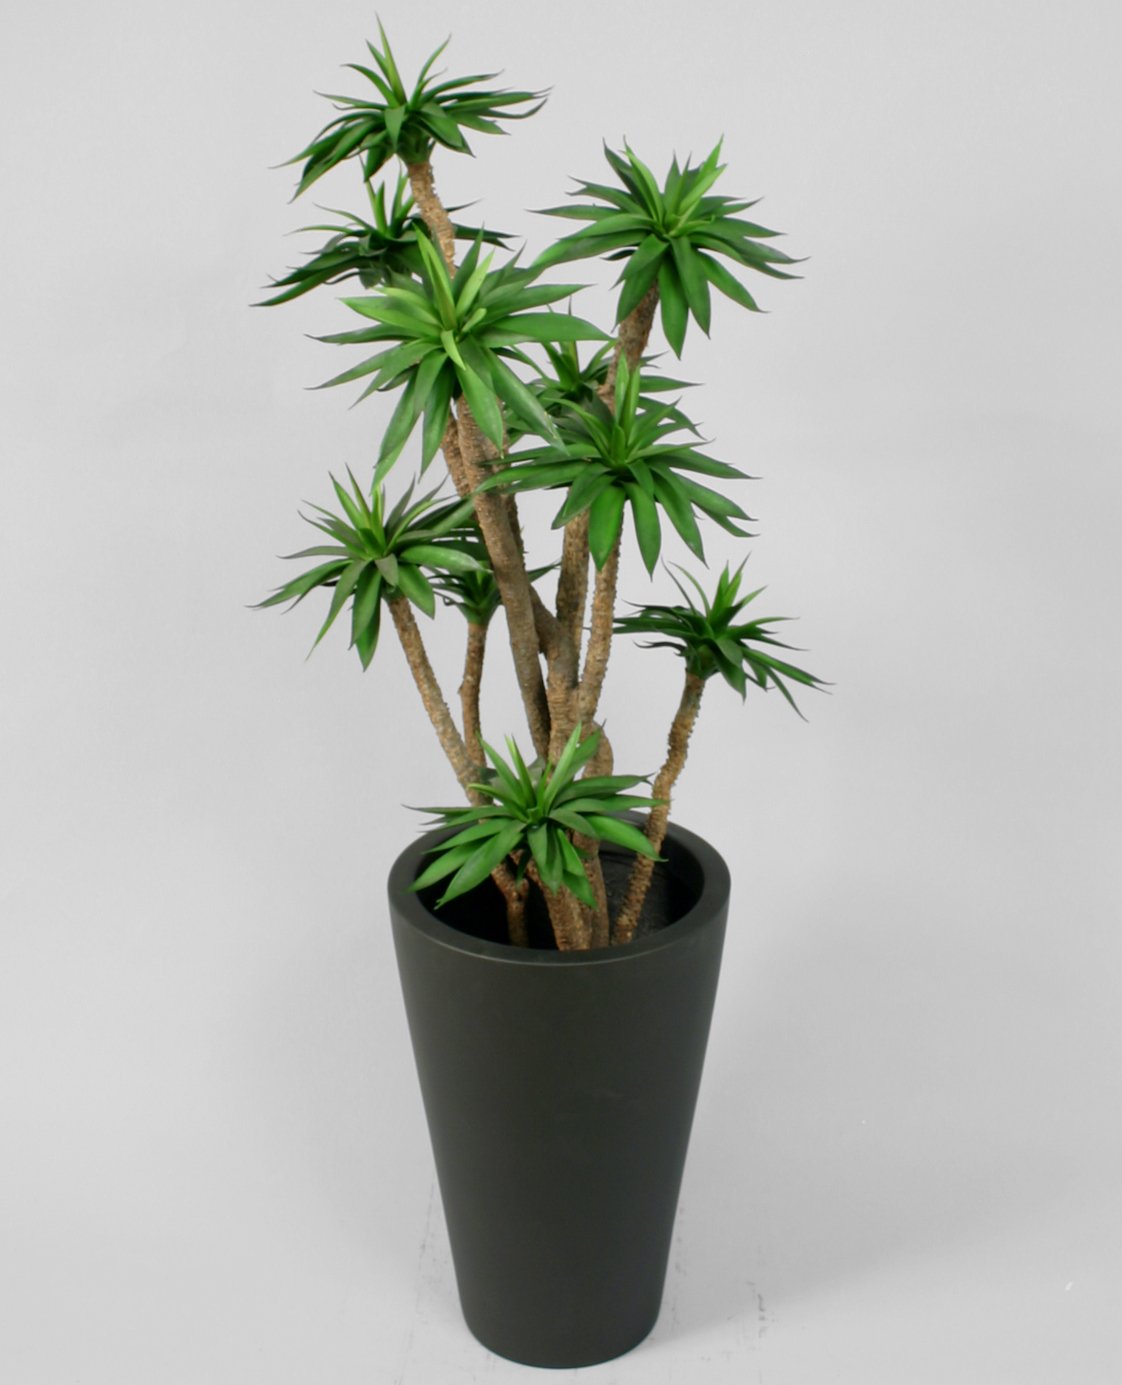 Kunstig agave plante - 100 cm - Kunstige træer - Green Trading ApS